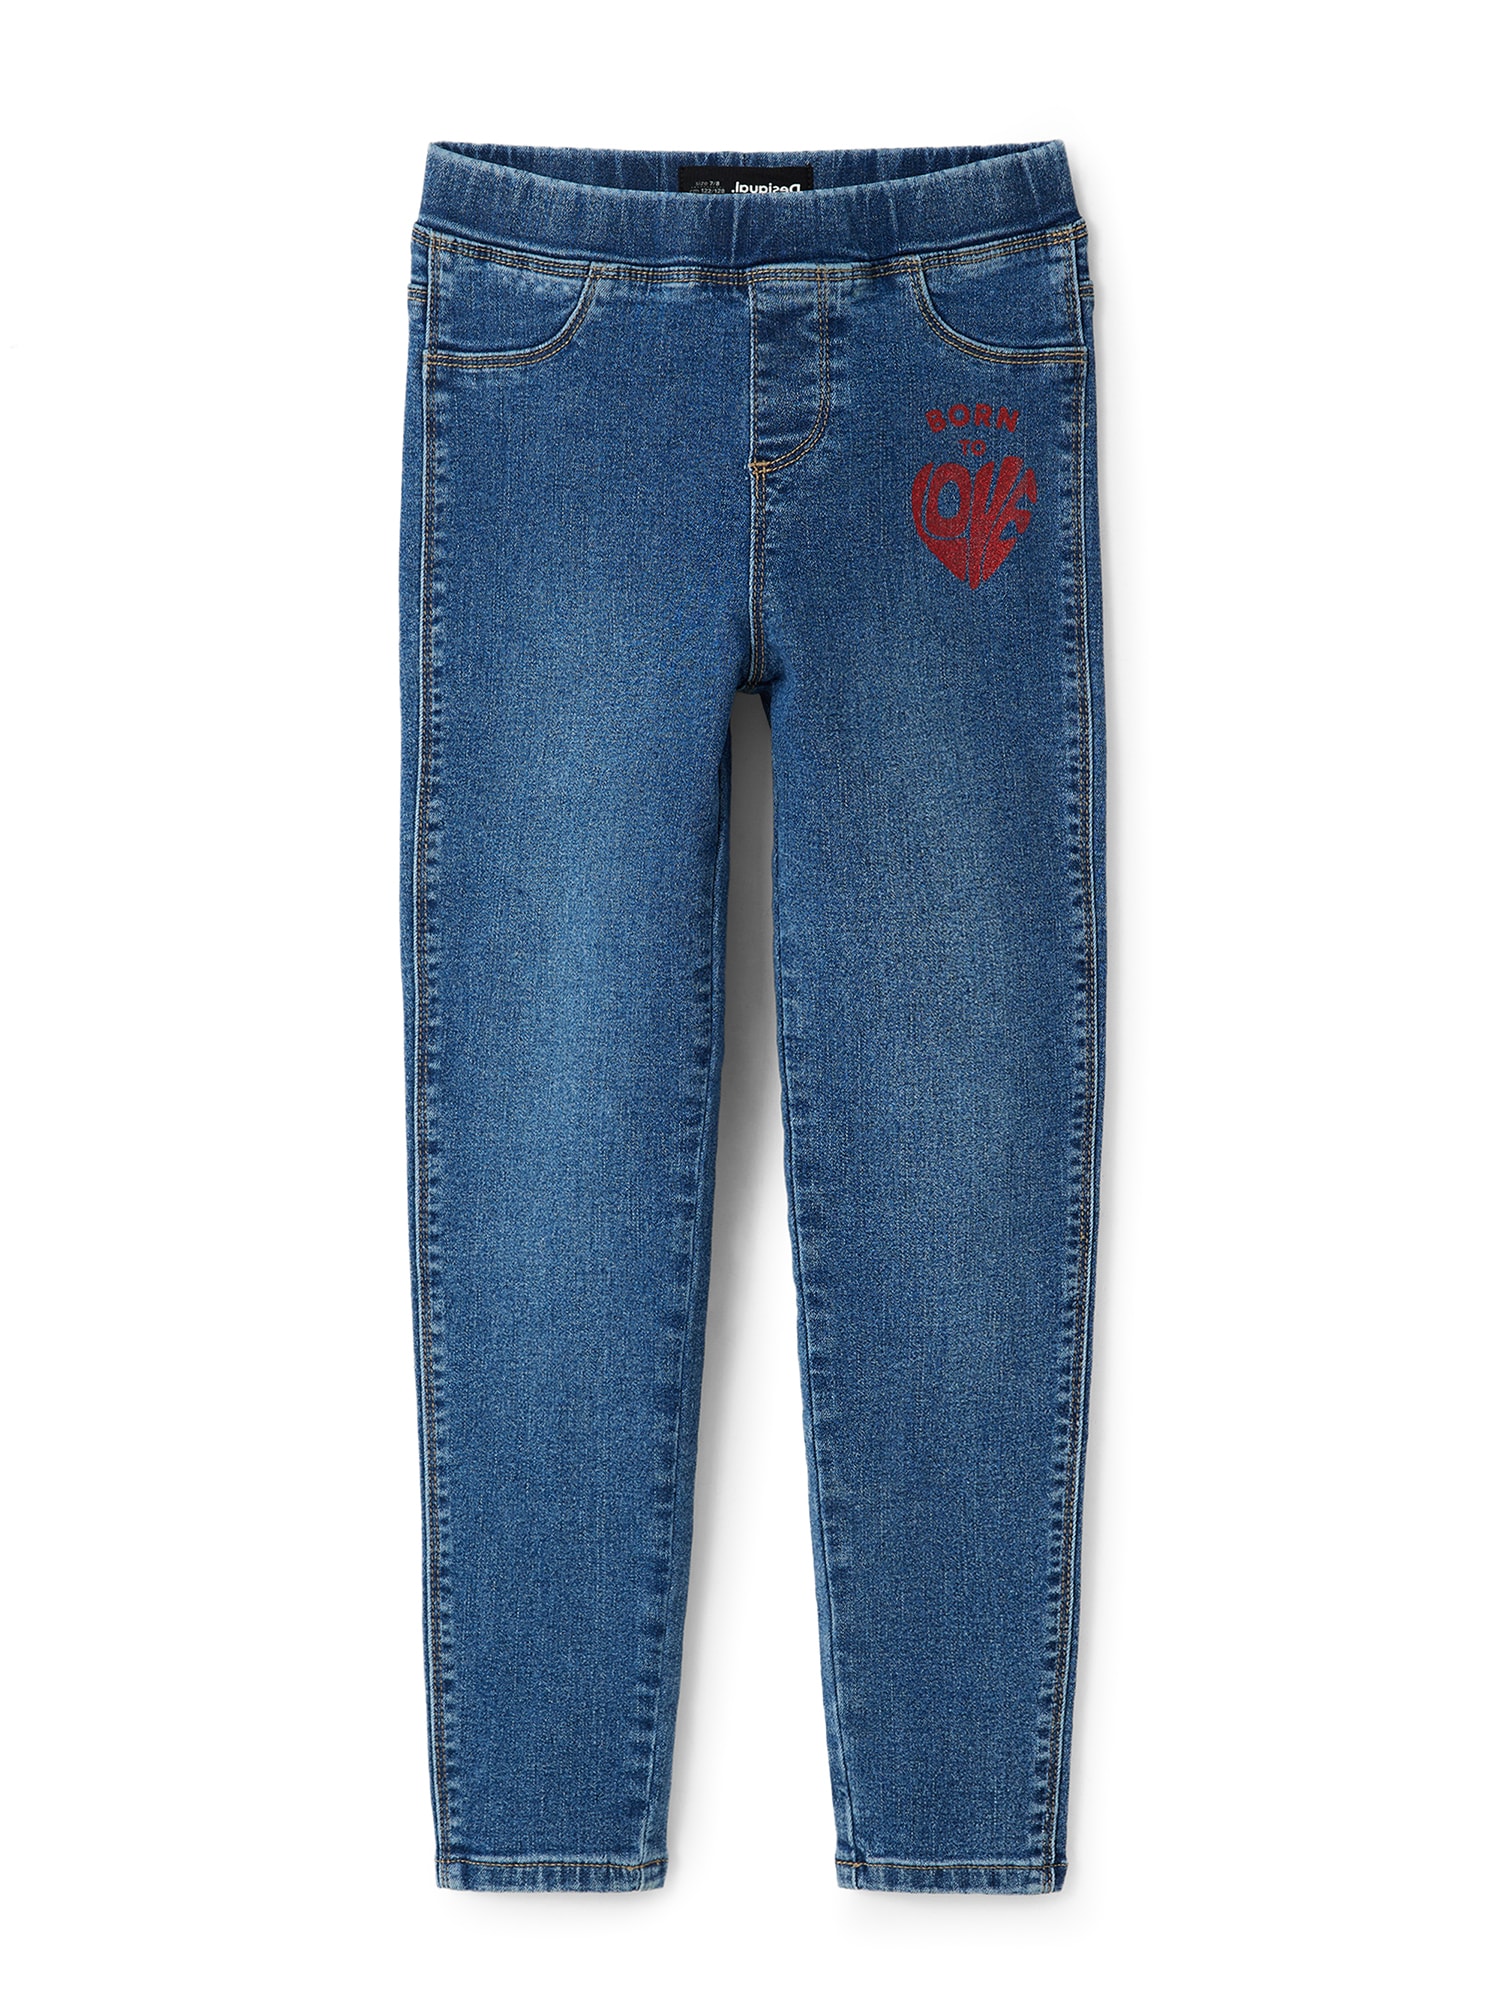 Desigual Jeans  albastru denim / roși aprins